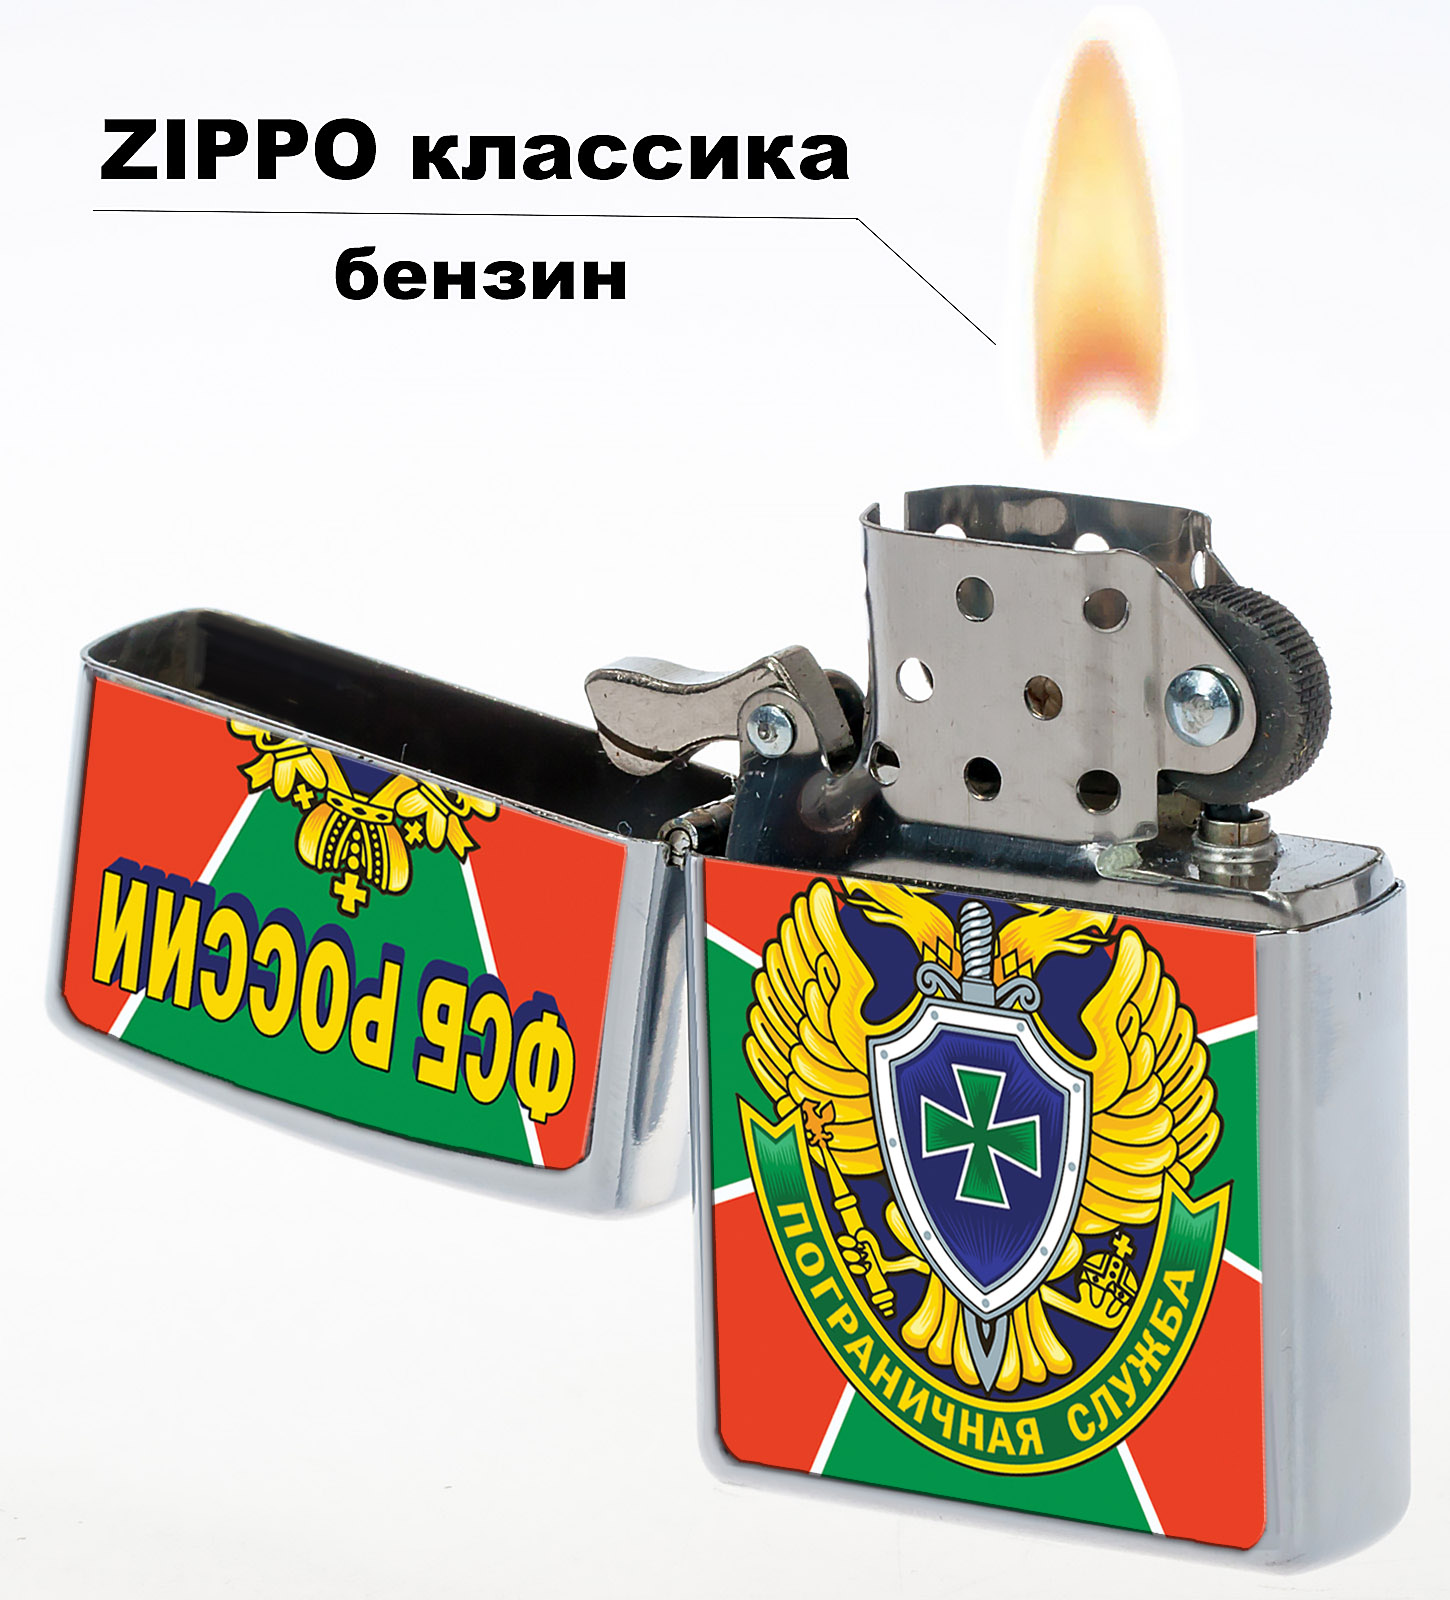 Зажигалка Zippo бензиновая "Пограничная служба ФСБ России" 